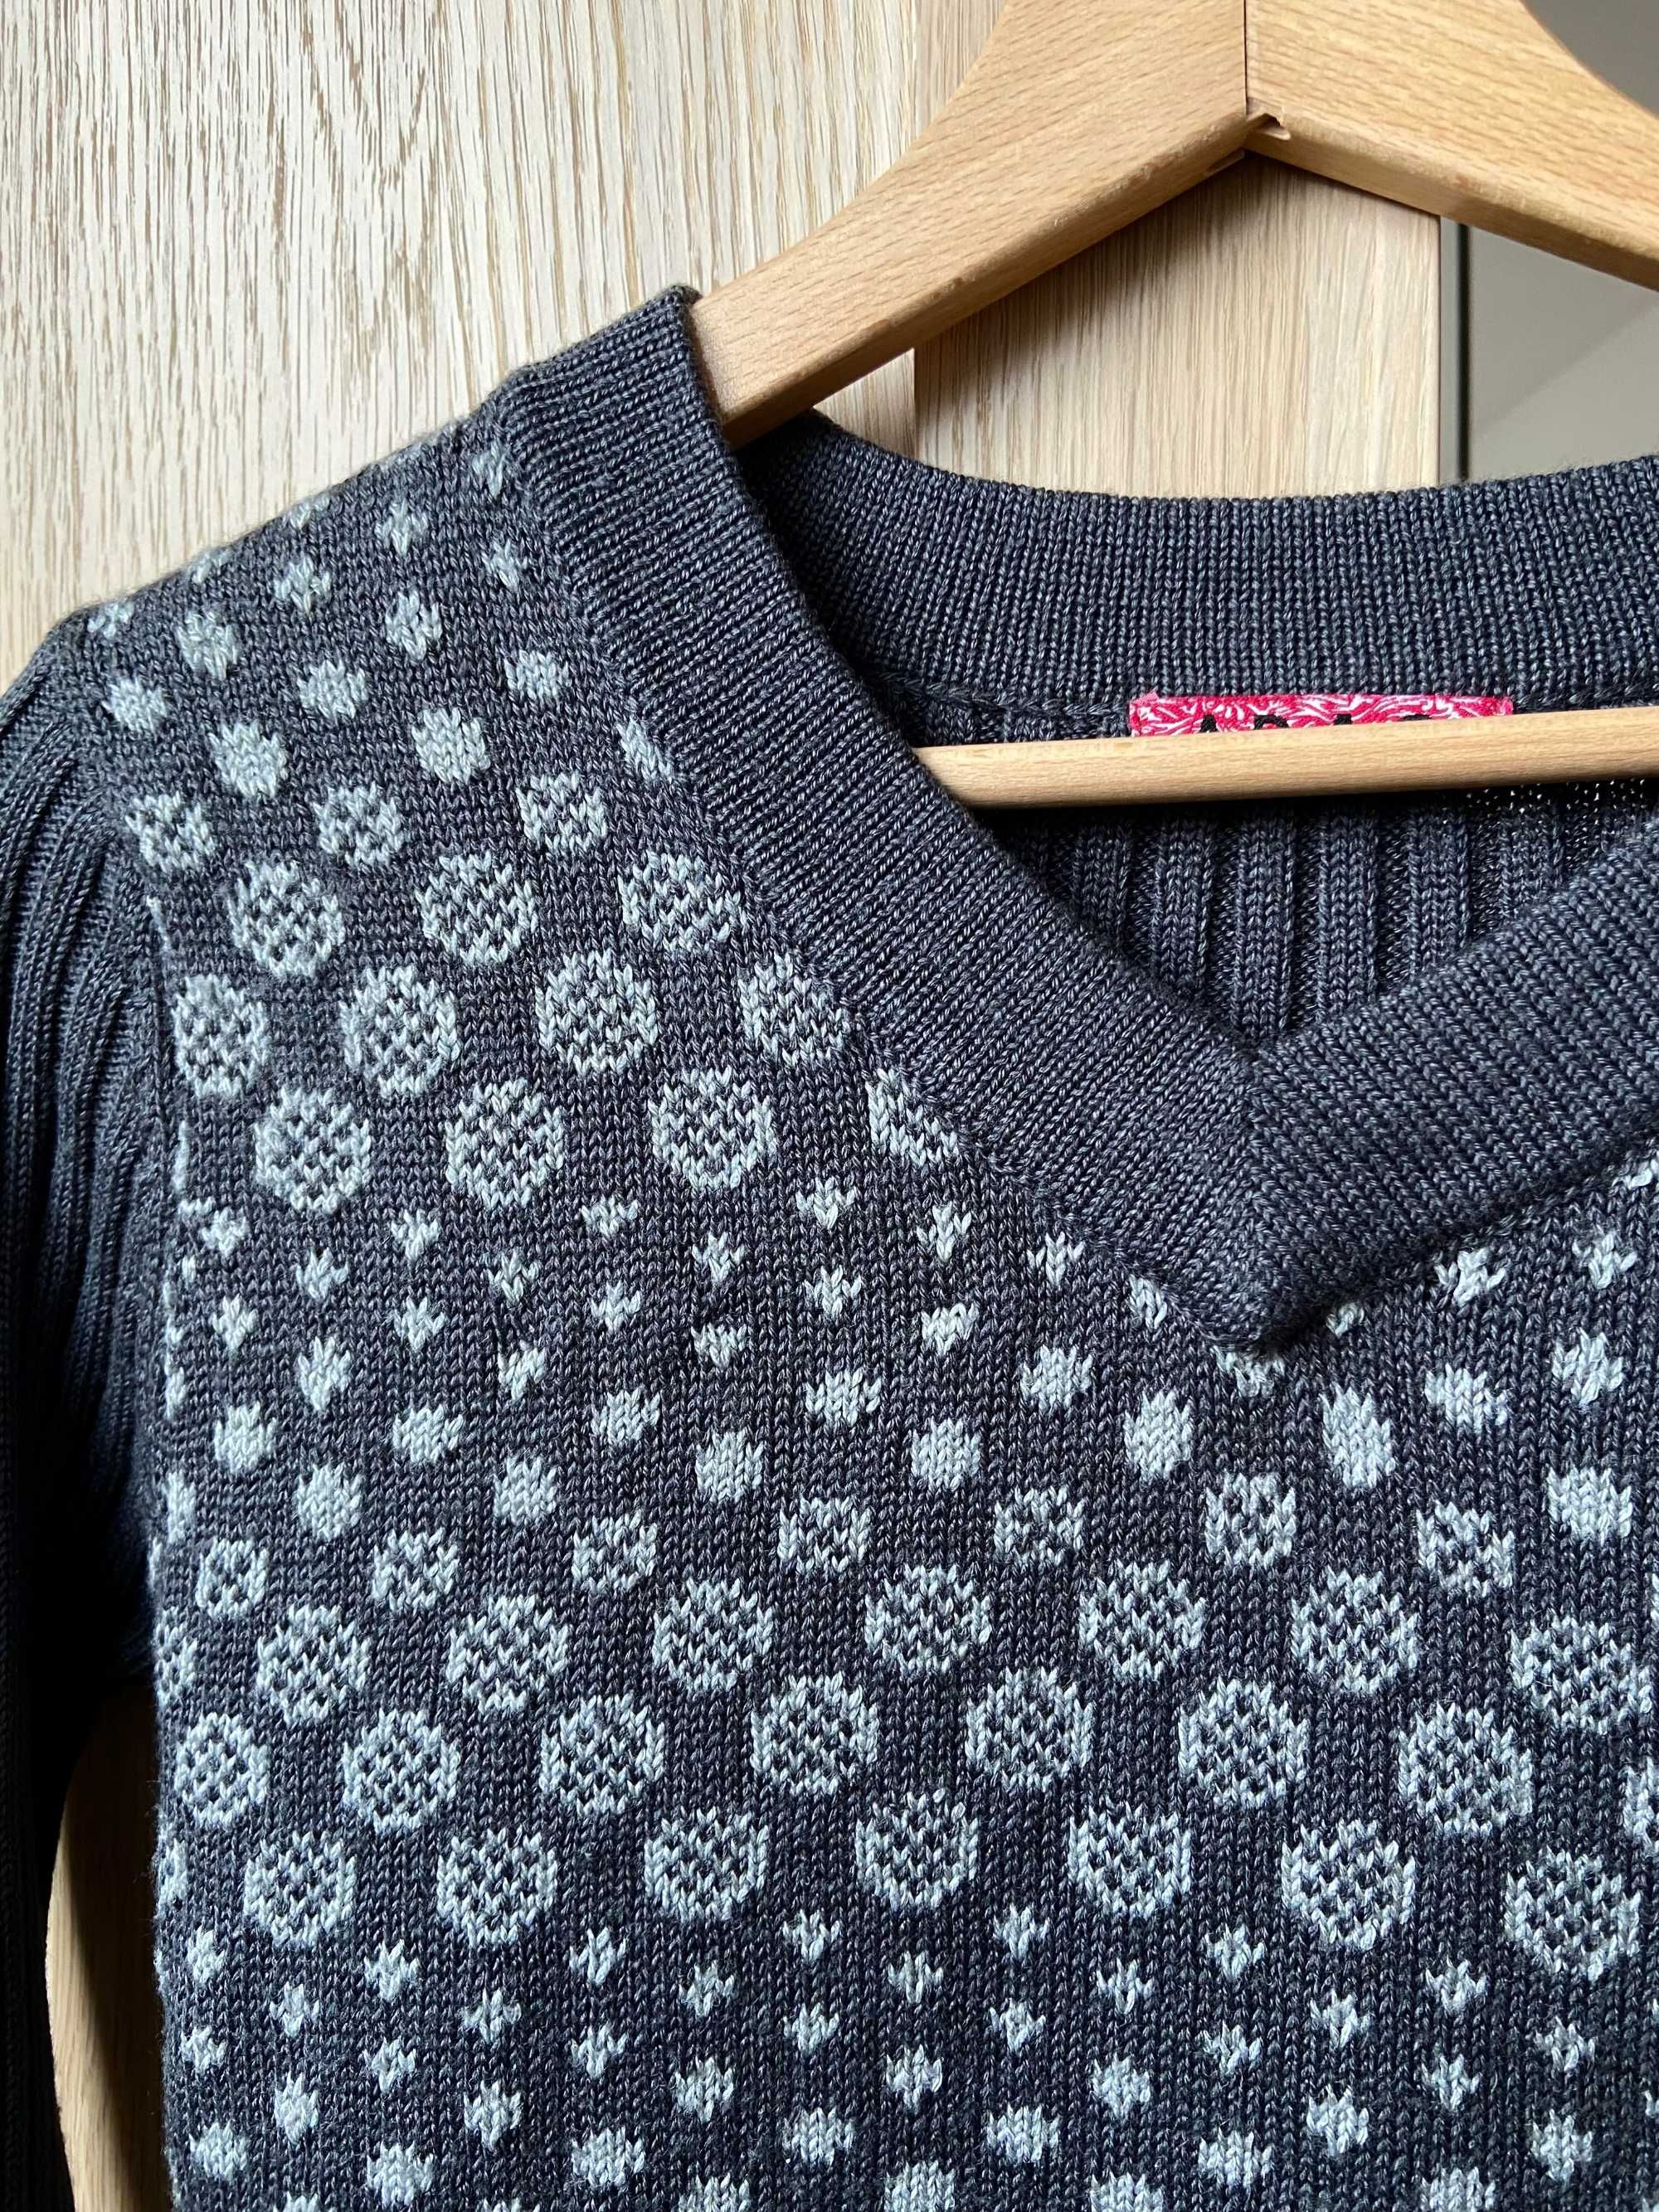 Szary sweter we wzorki, 35% wełna, rozmiar S/M, vintage 2000